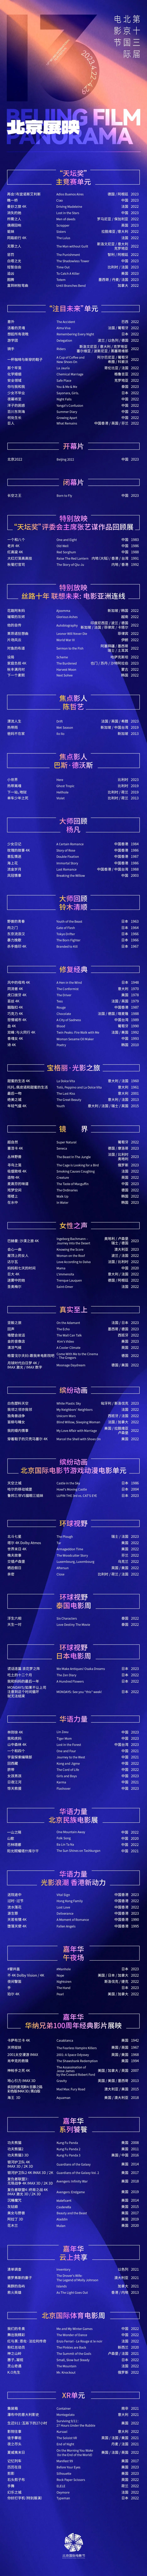 第13届北京国际电影节“北京展映”完整片单公布